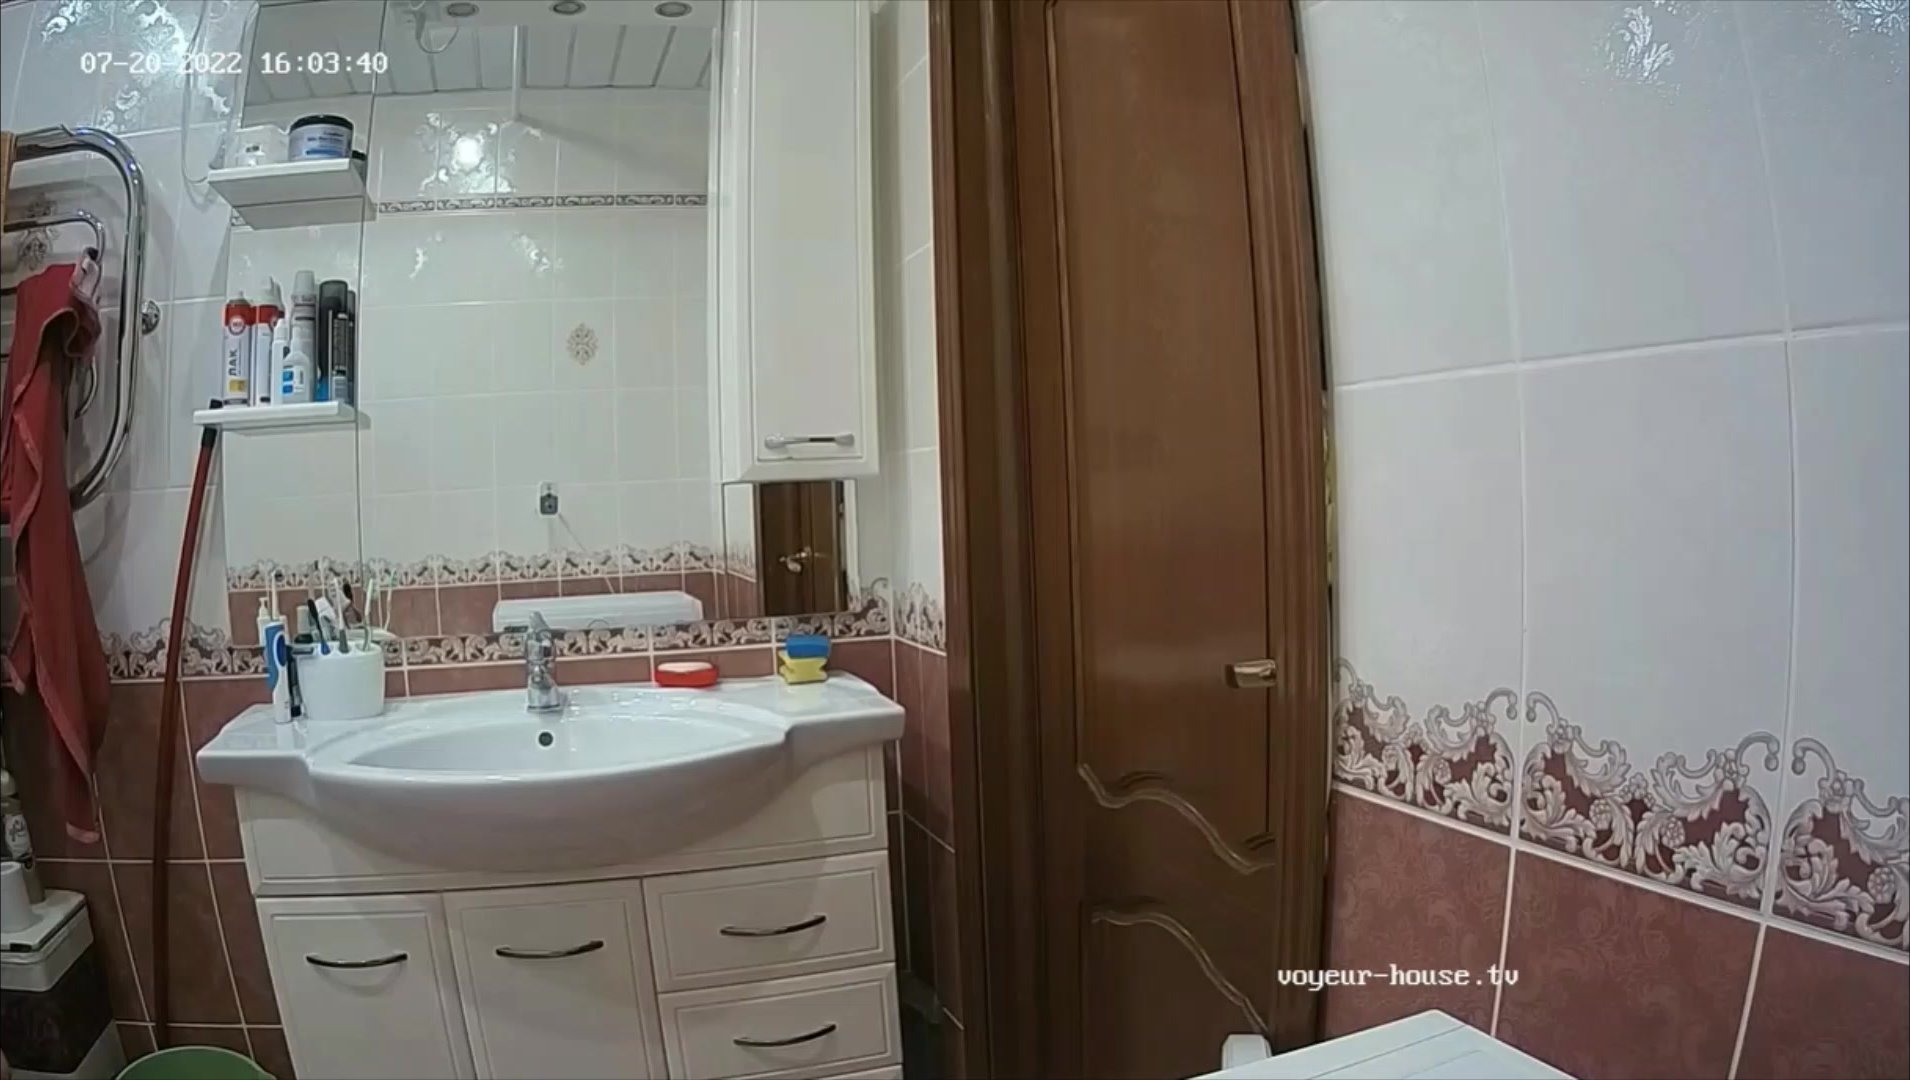 Woman  in Toilet 354